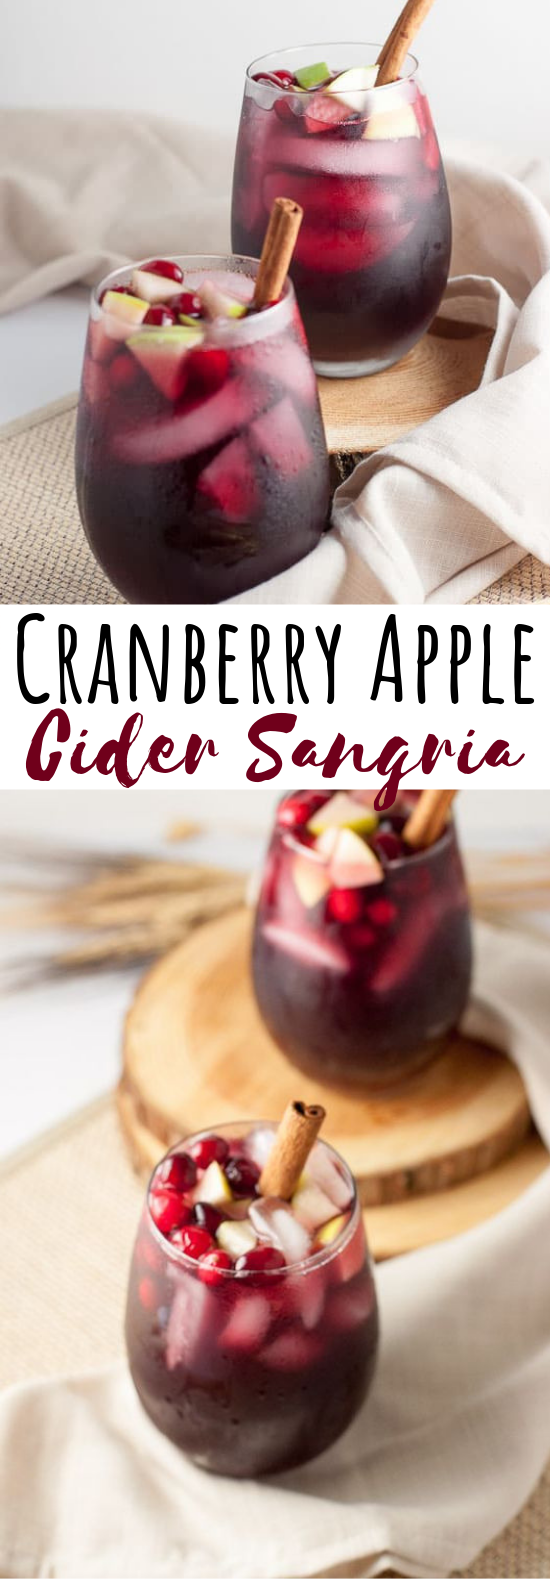 Cranberry Apple Cider Sangria #drinks #cocktails